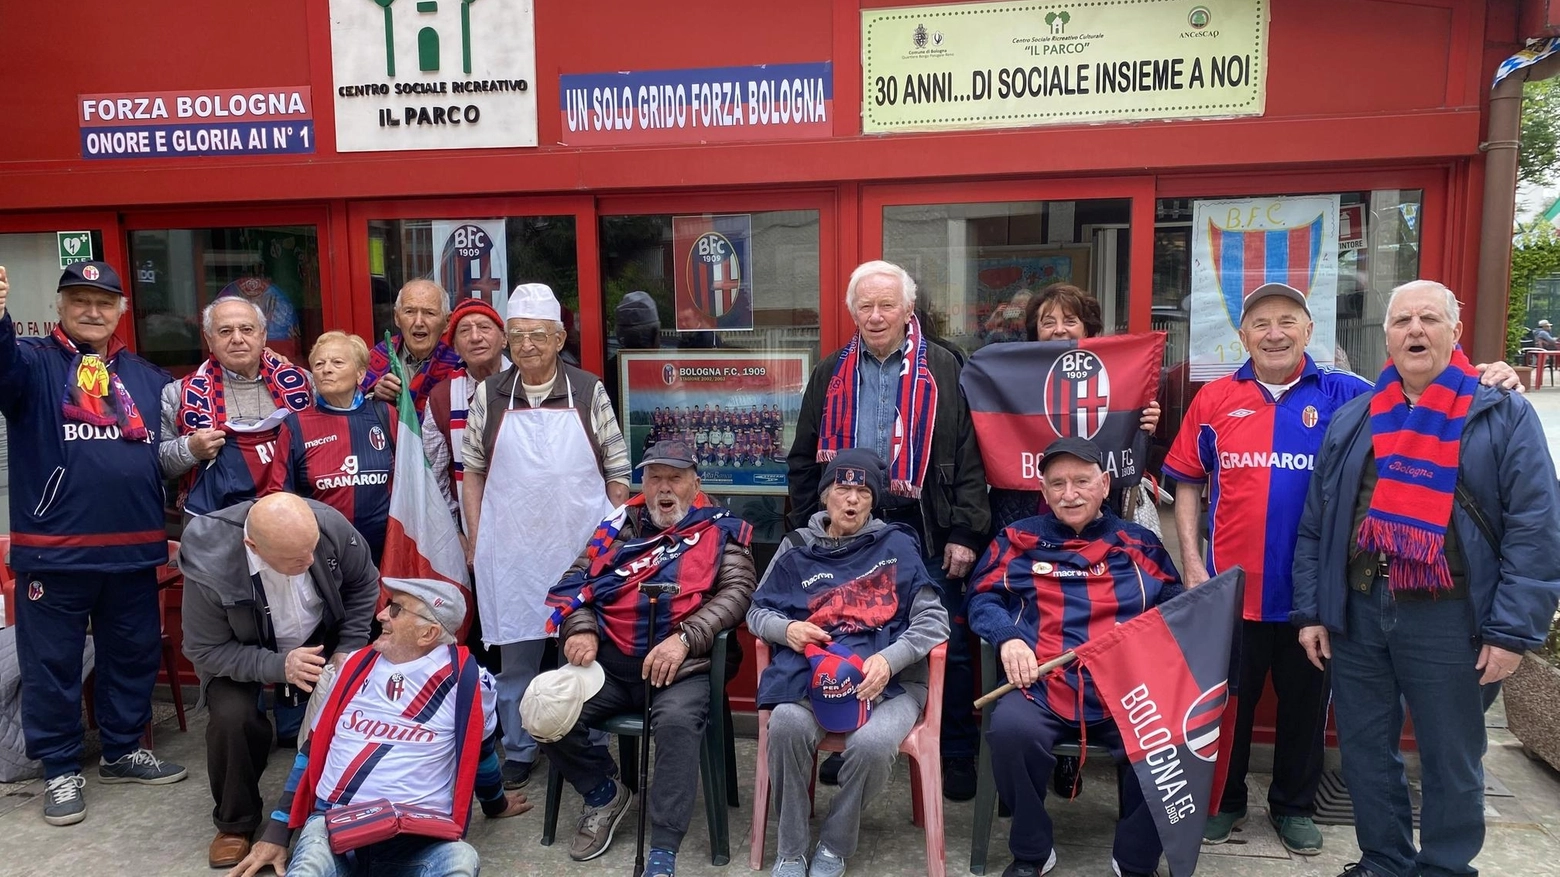 Foto di gruppo virata al rossoblù per il Centro Sociale Anziani ’Il Parco’, a Bologna